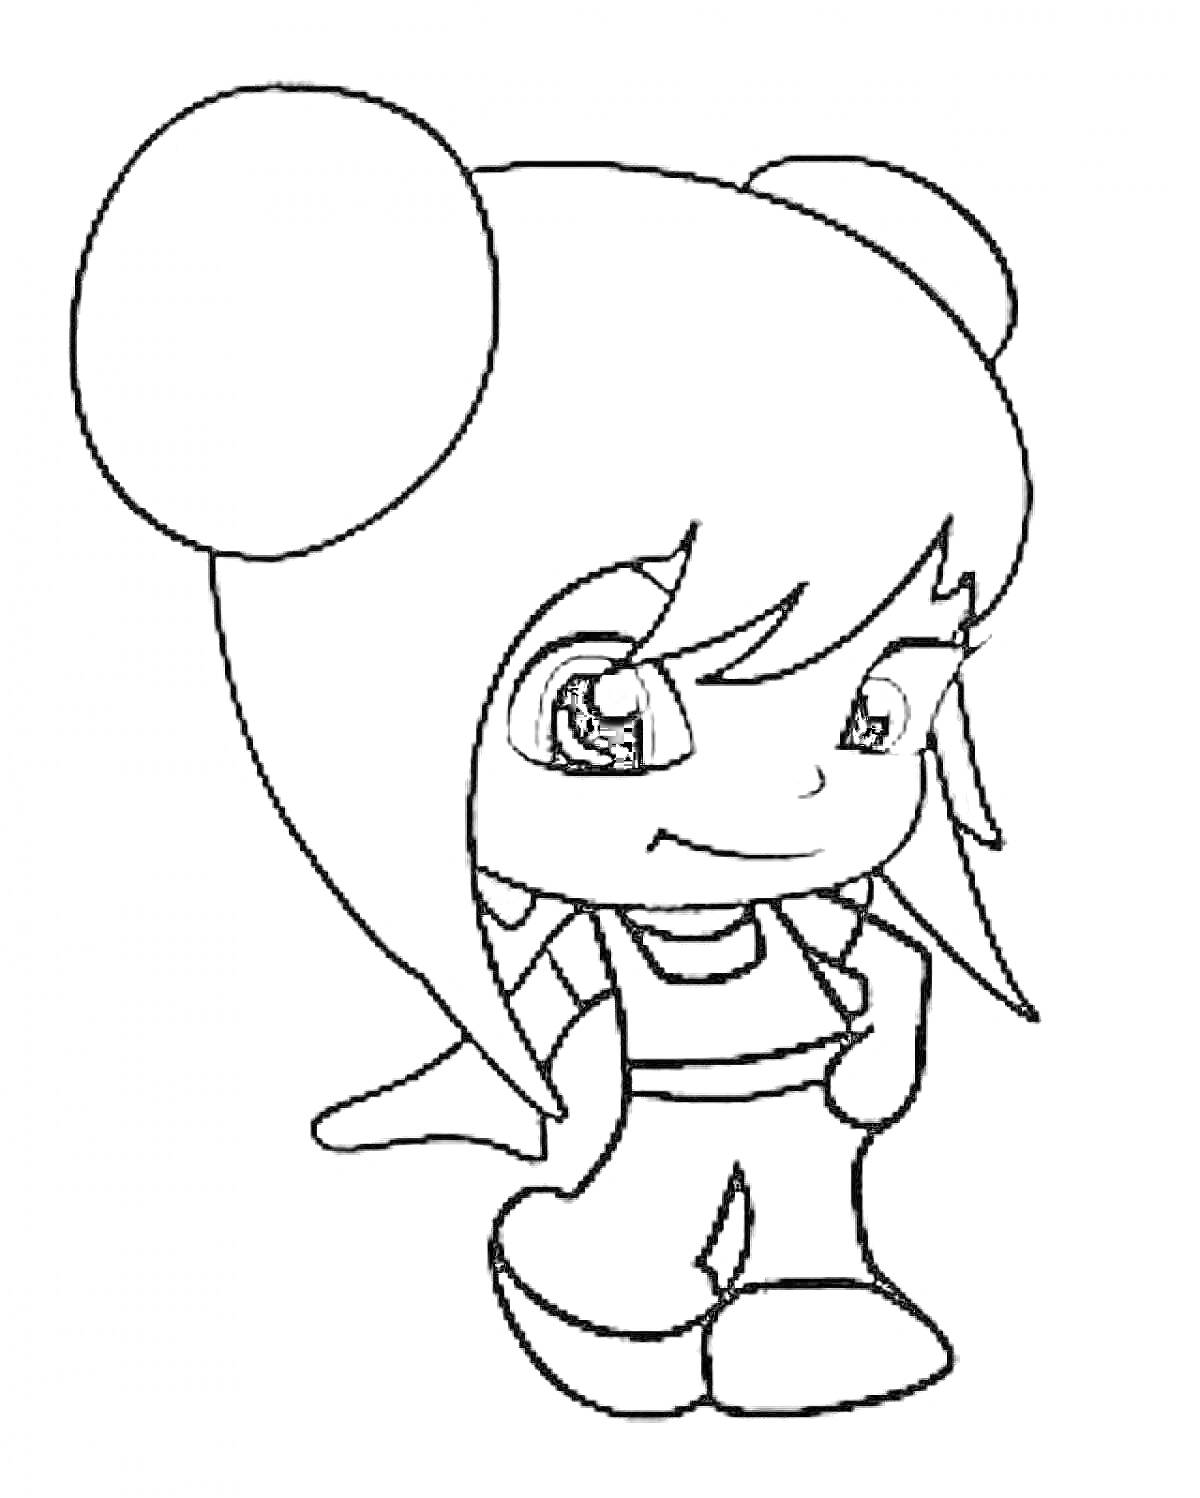 Пинипон-девочка с двумя большими заколками, длинные волосы, костюм с шортами